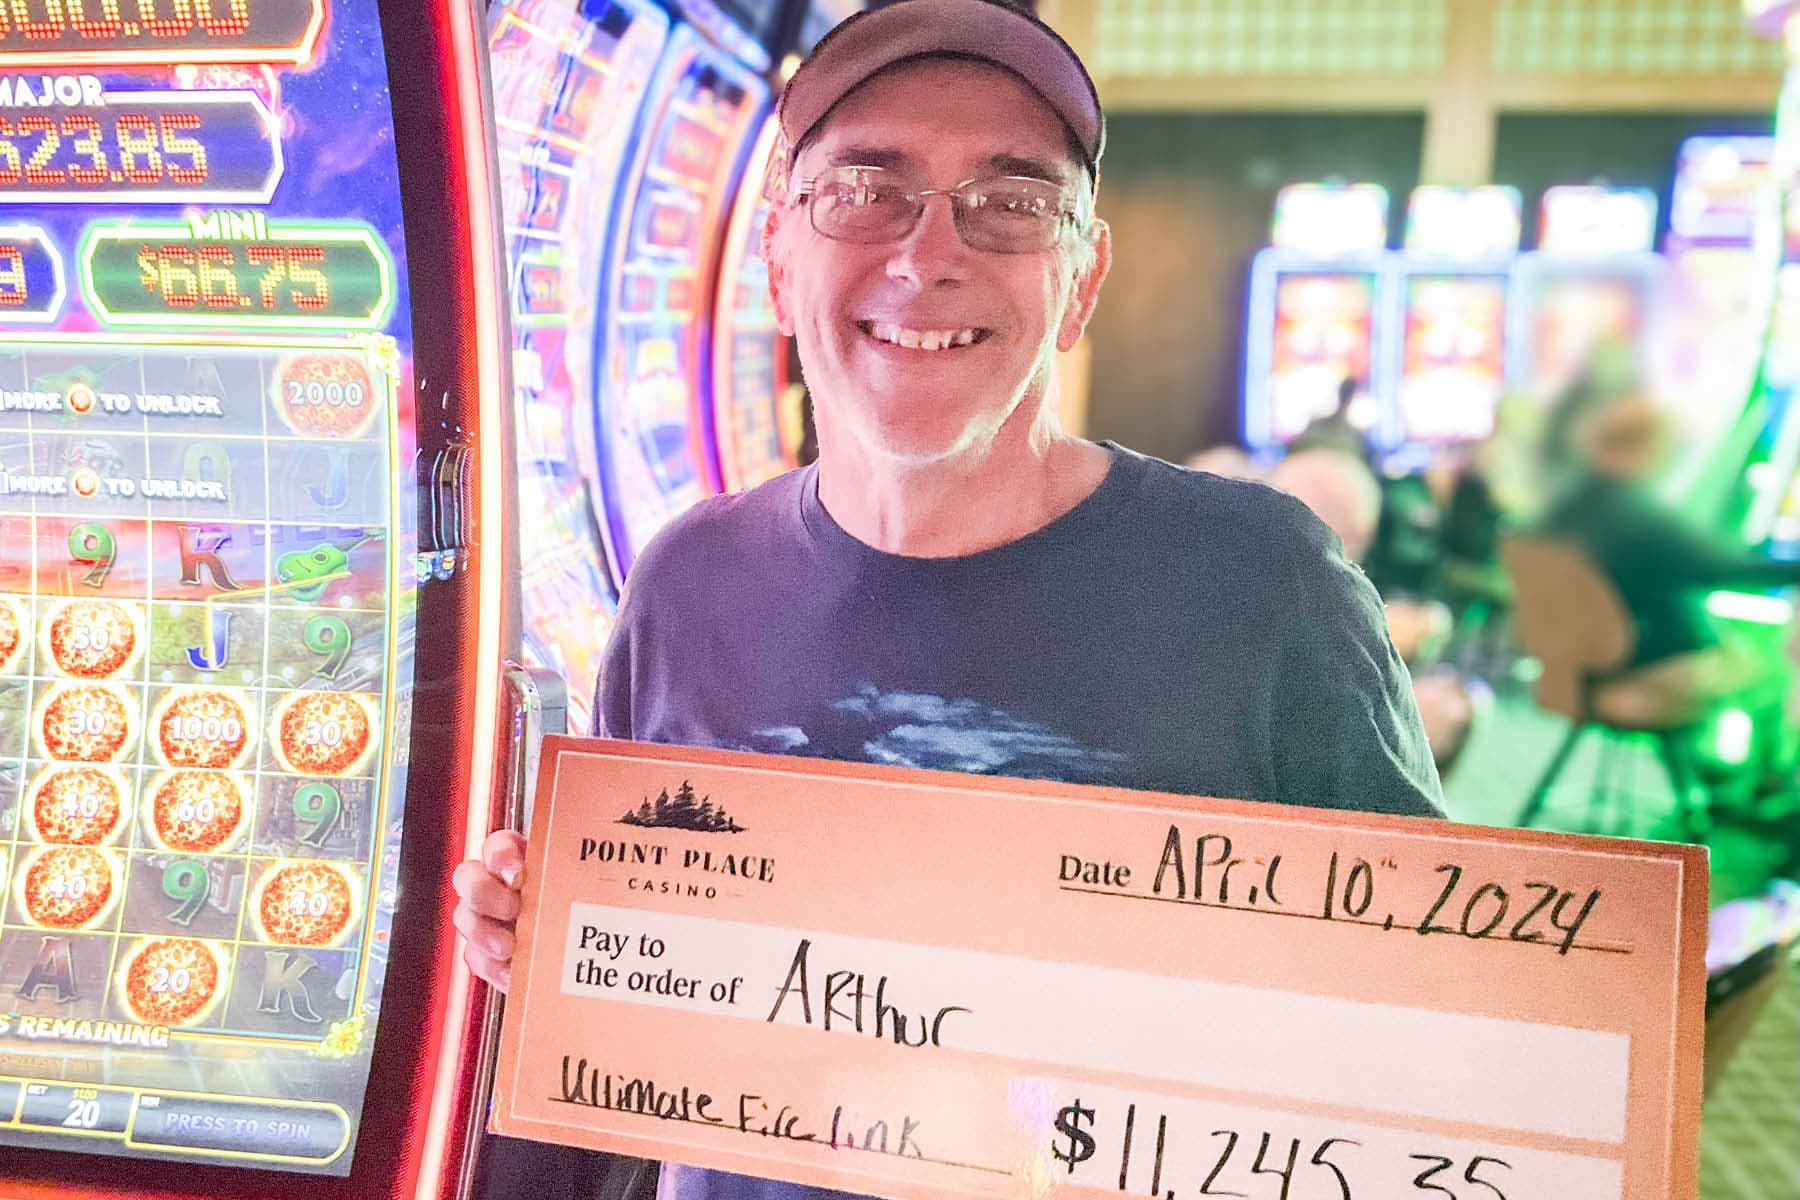 Arthur won $11,245